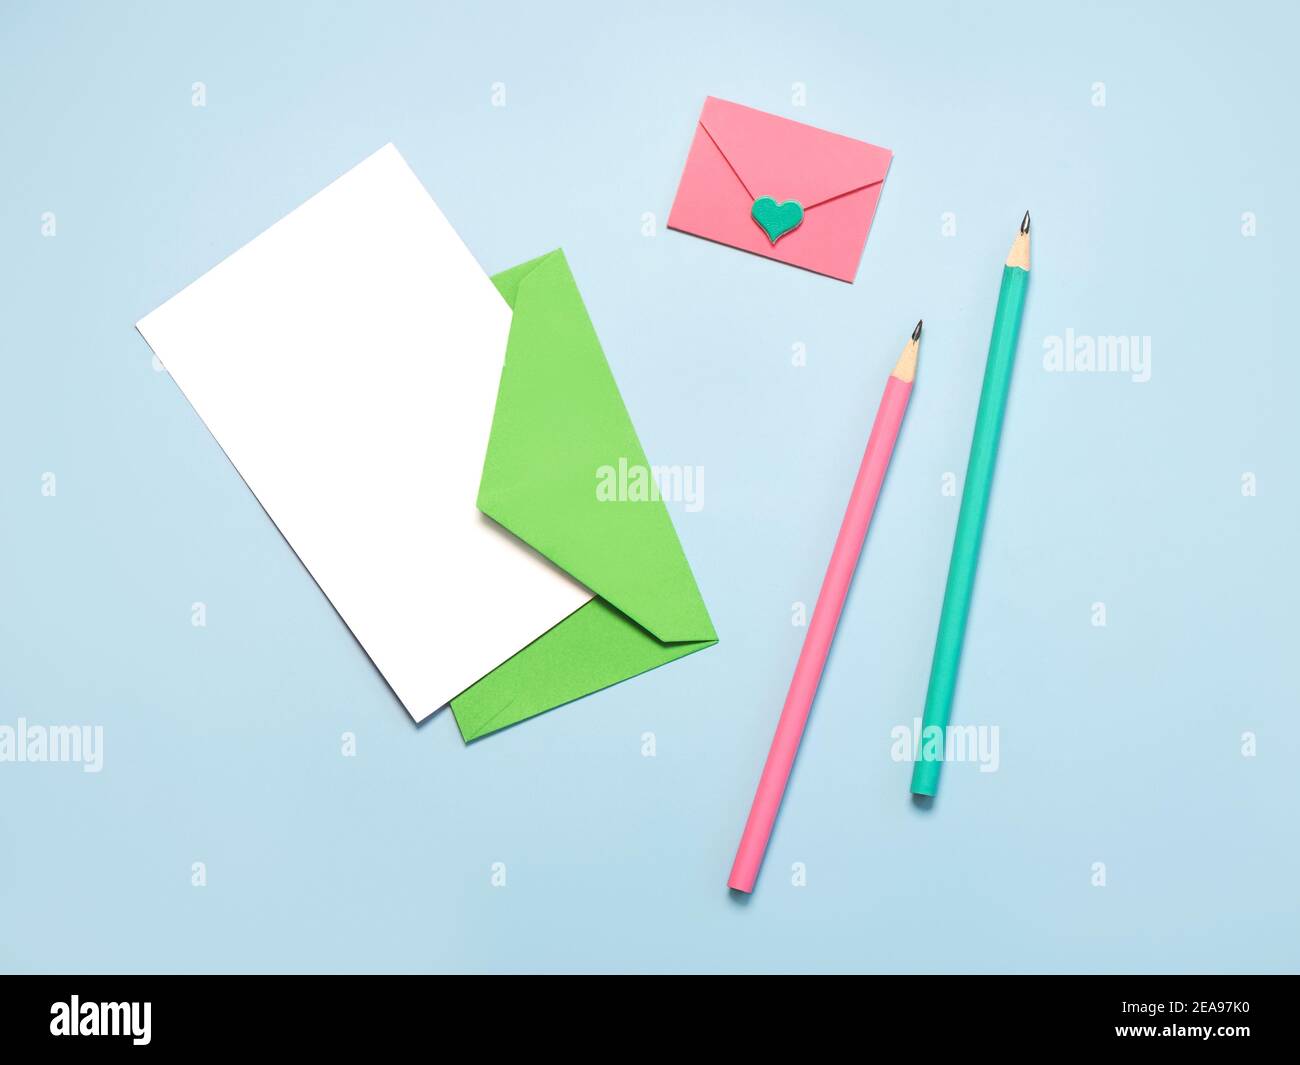 Grüner Papierumschlag mit weißer Karte, pinker Papierumschlag pink und grüne Stifte auf blauem Hintergrund Stockfoto